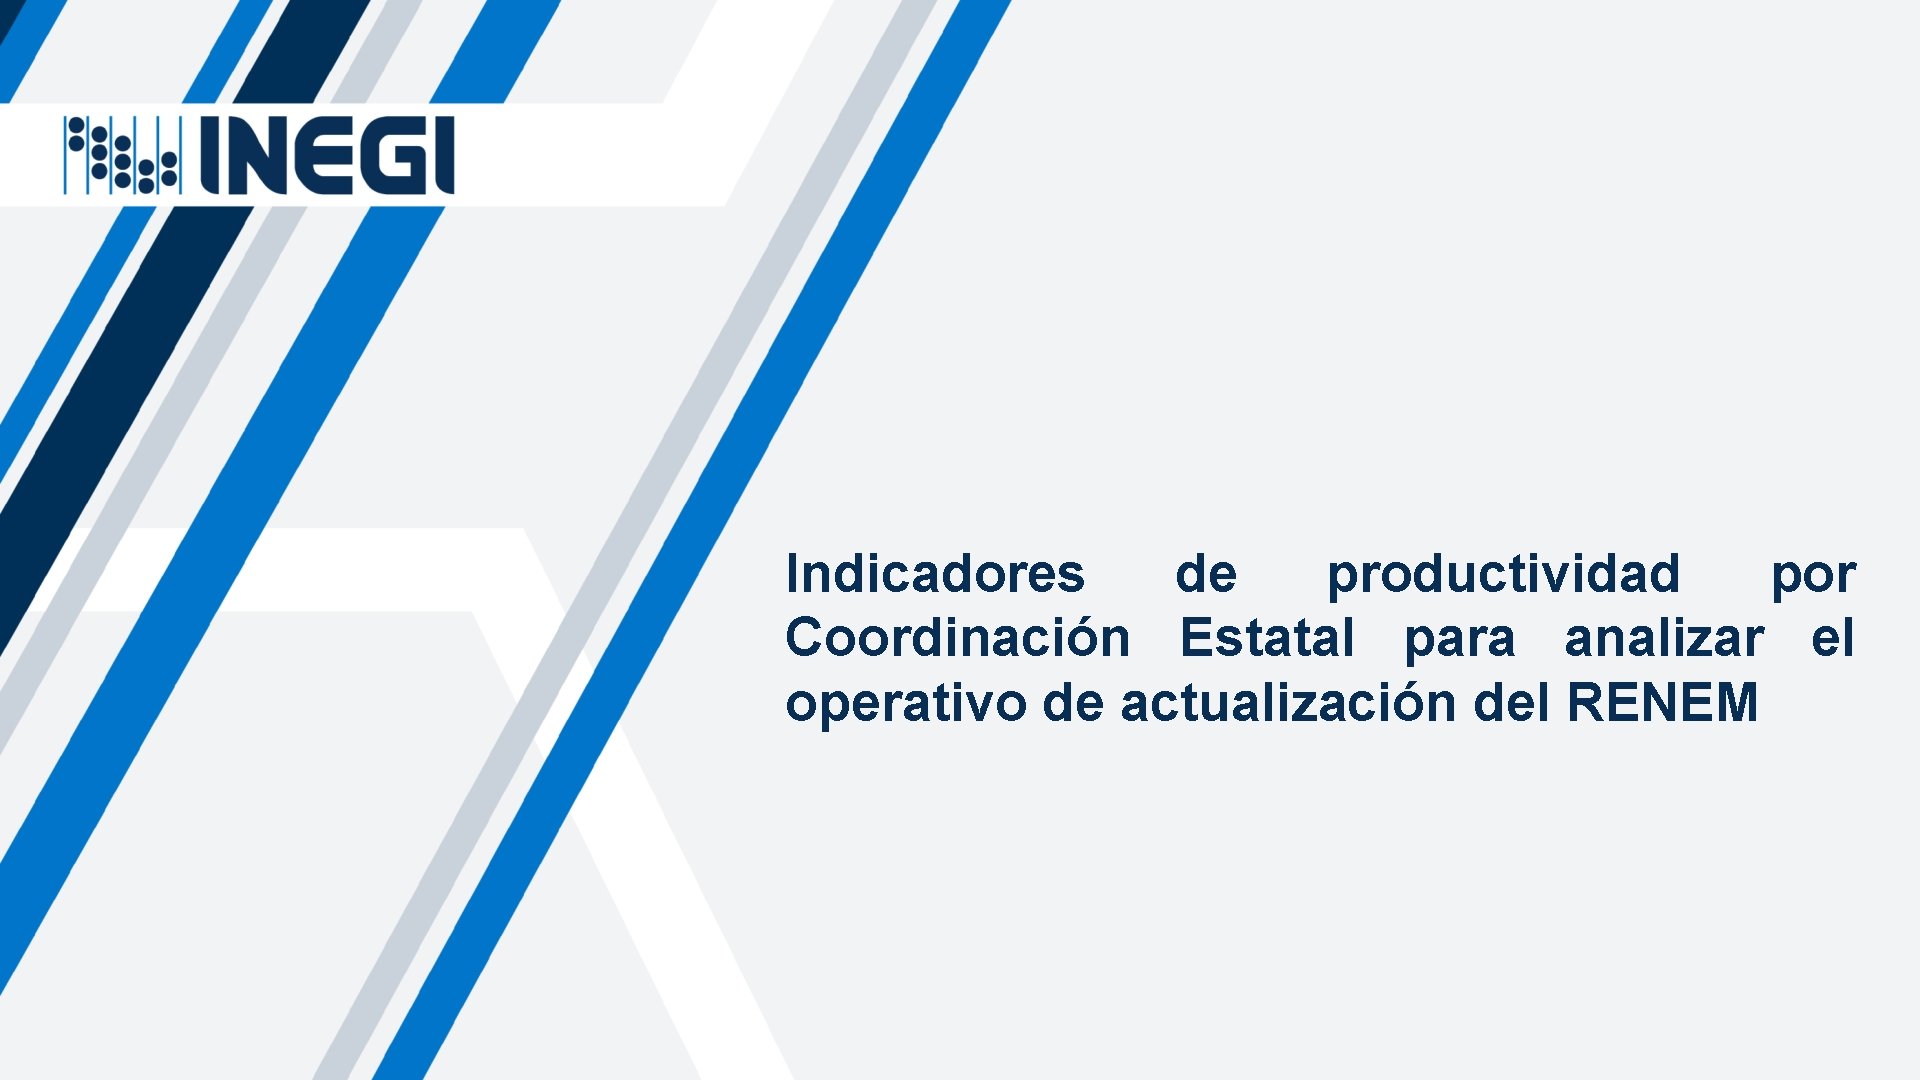 Indicadores de productividad por Coordinación Estatal para analizar el operativo de actualización del RENEM